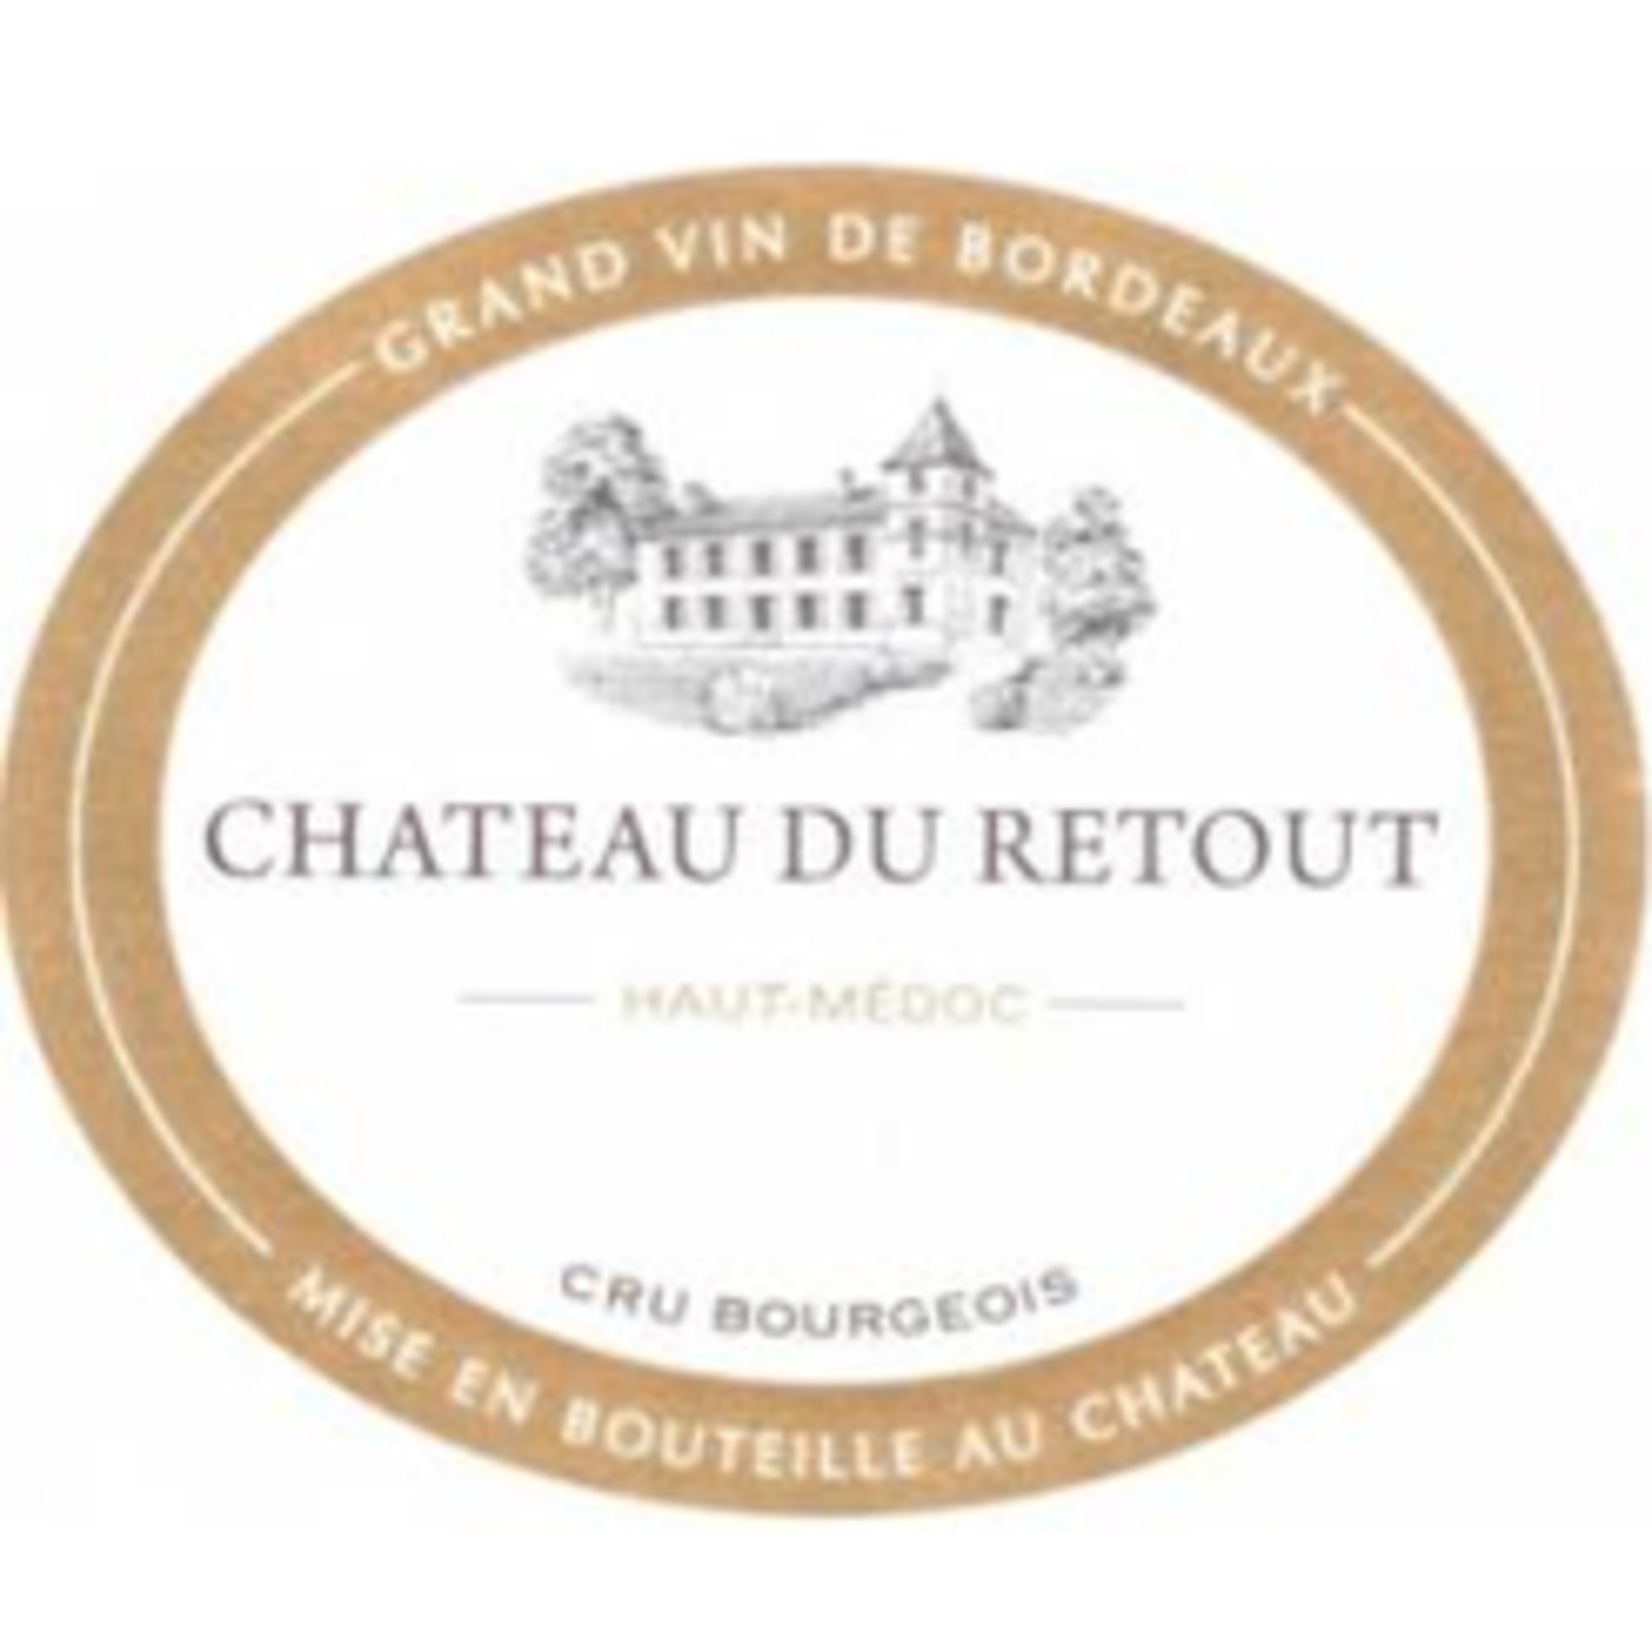 Wine Chateau du Retout 2015